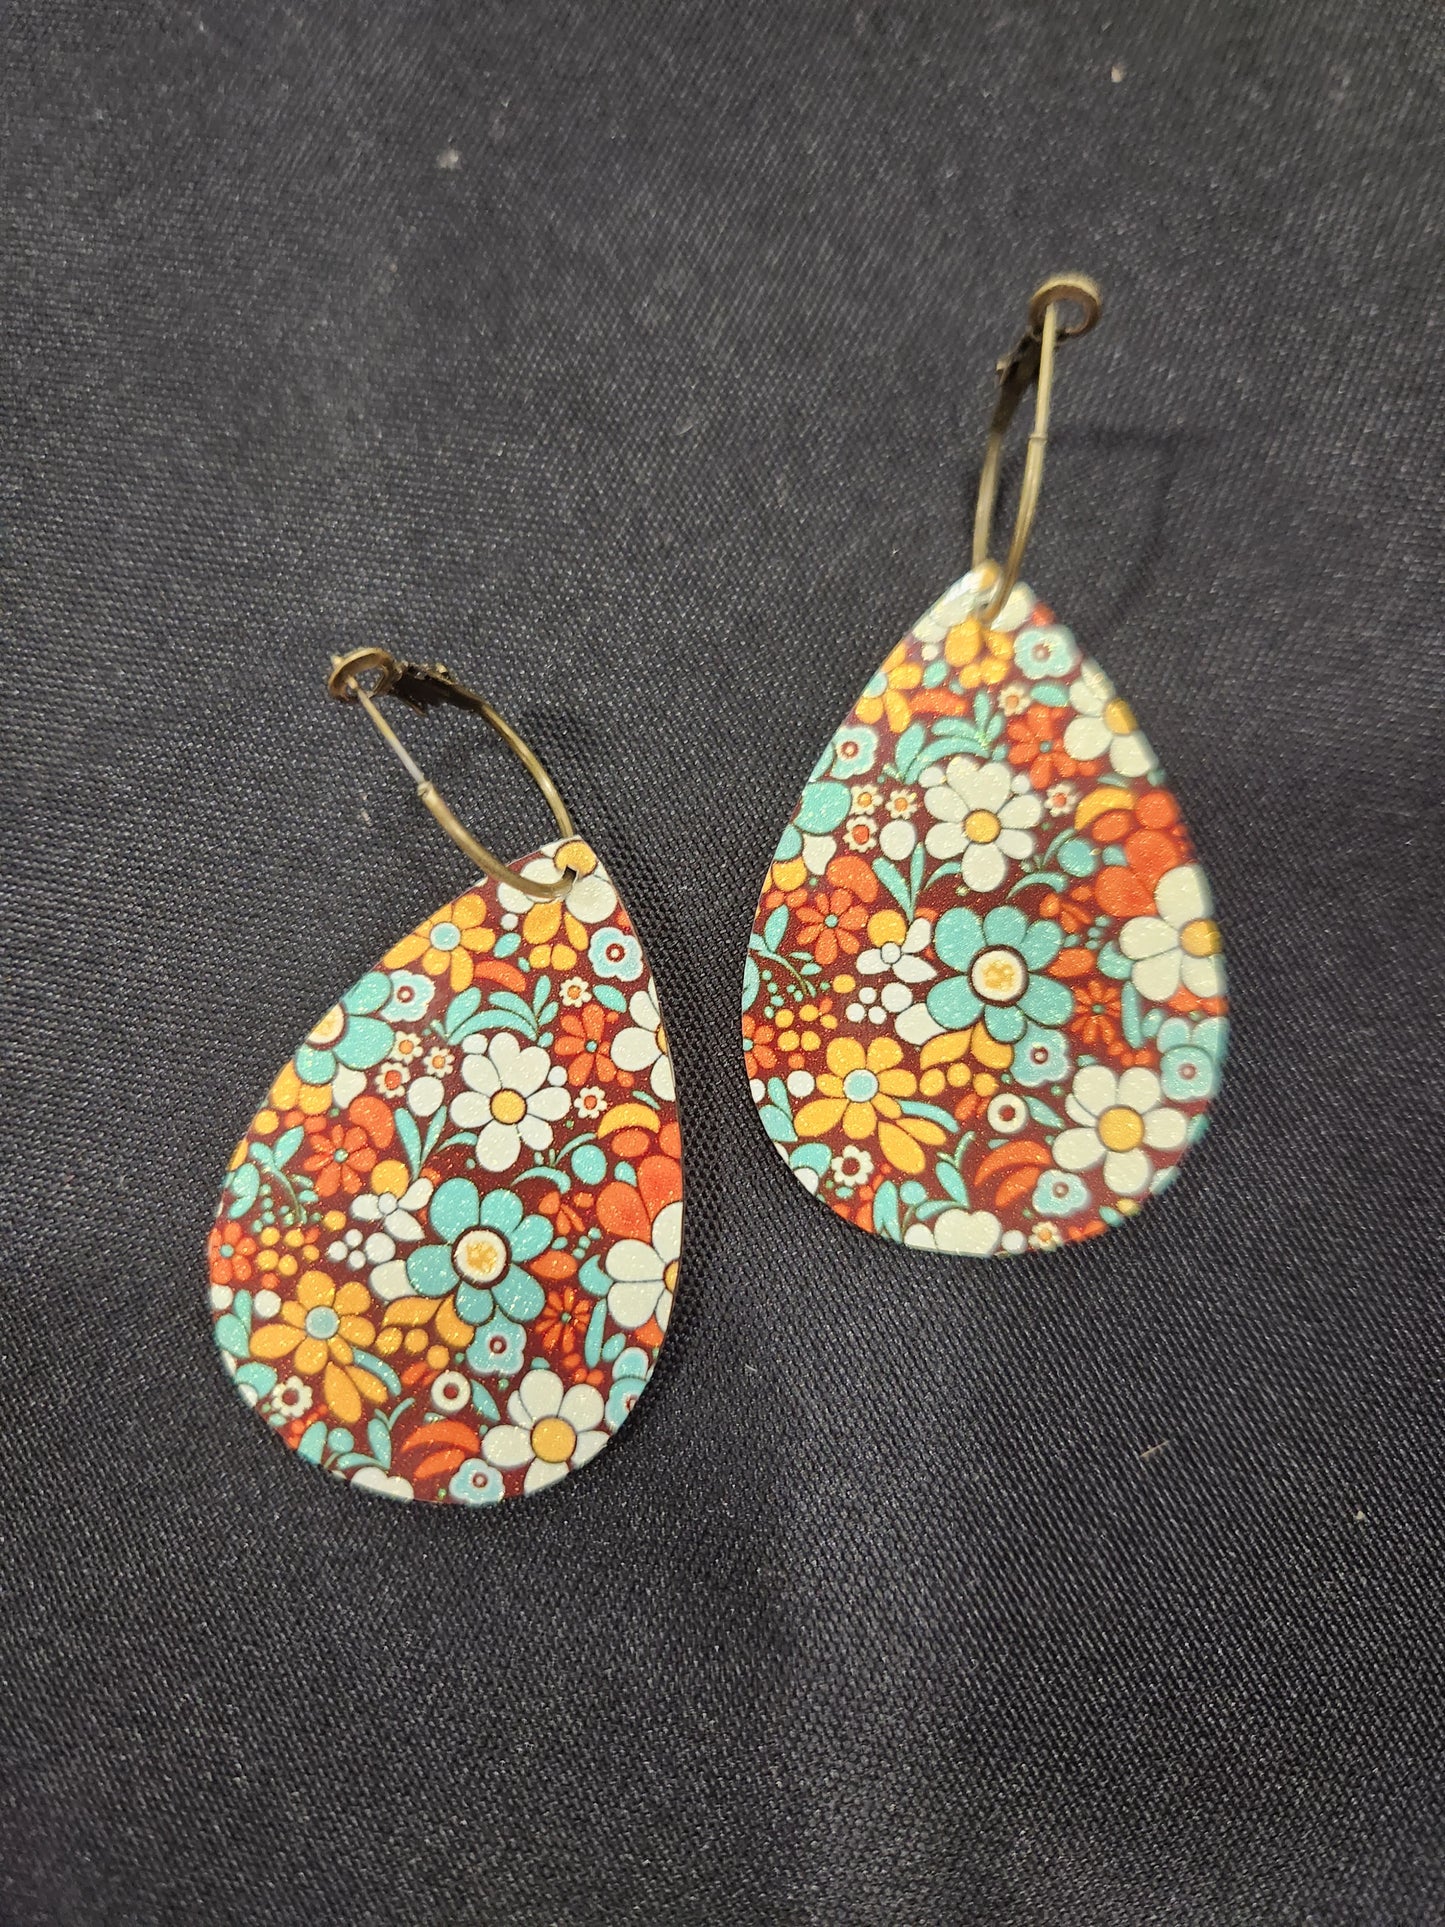 Fall Floral print teardrop earrings lightweight with brass hoops JN705